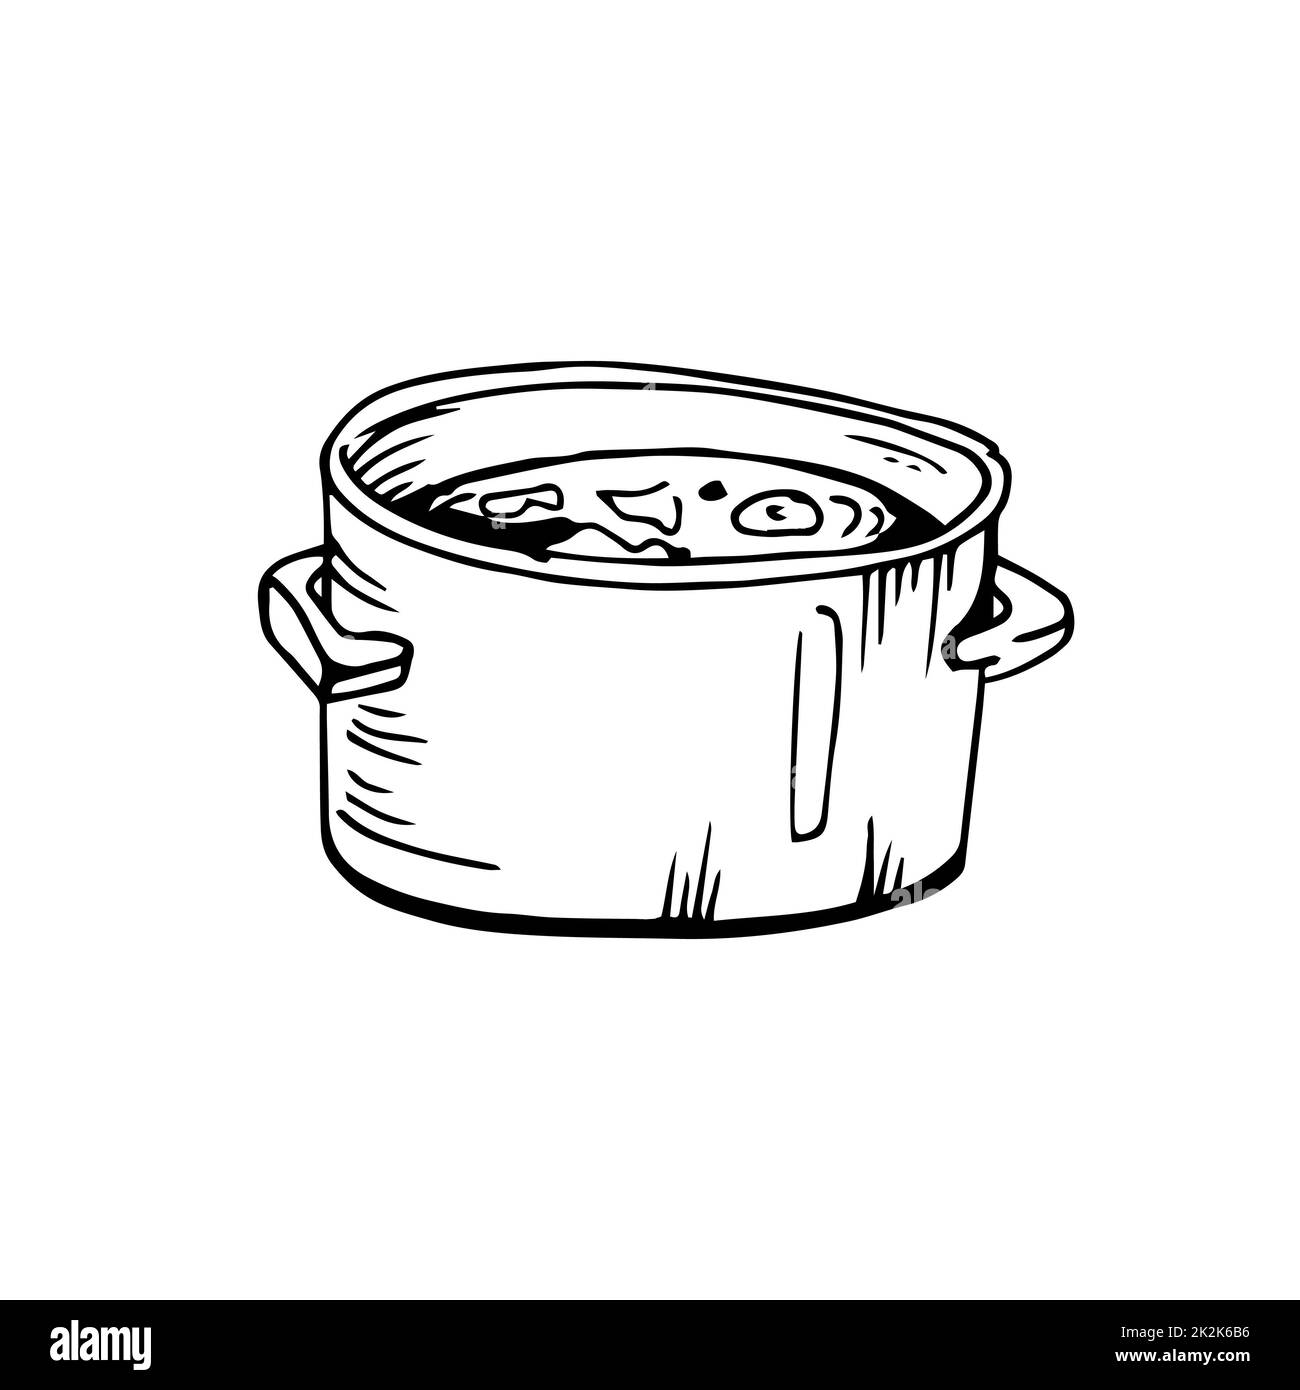 Soupe cuite fines lignes noires sur fond blanc - Vector Banque D'Images